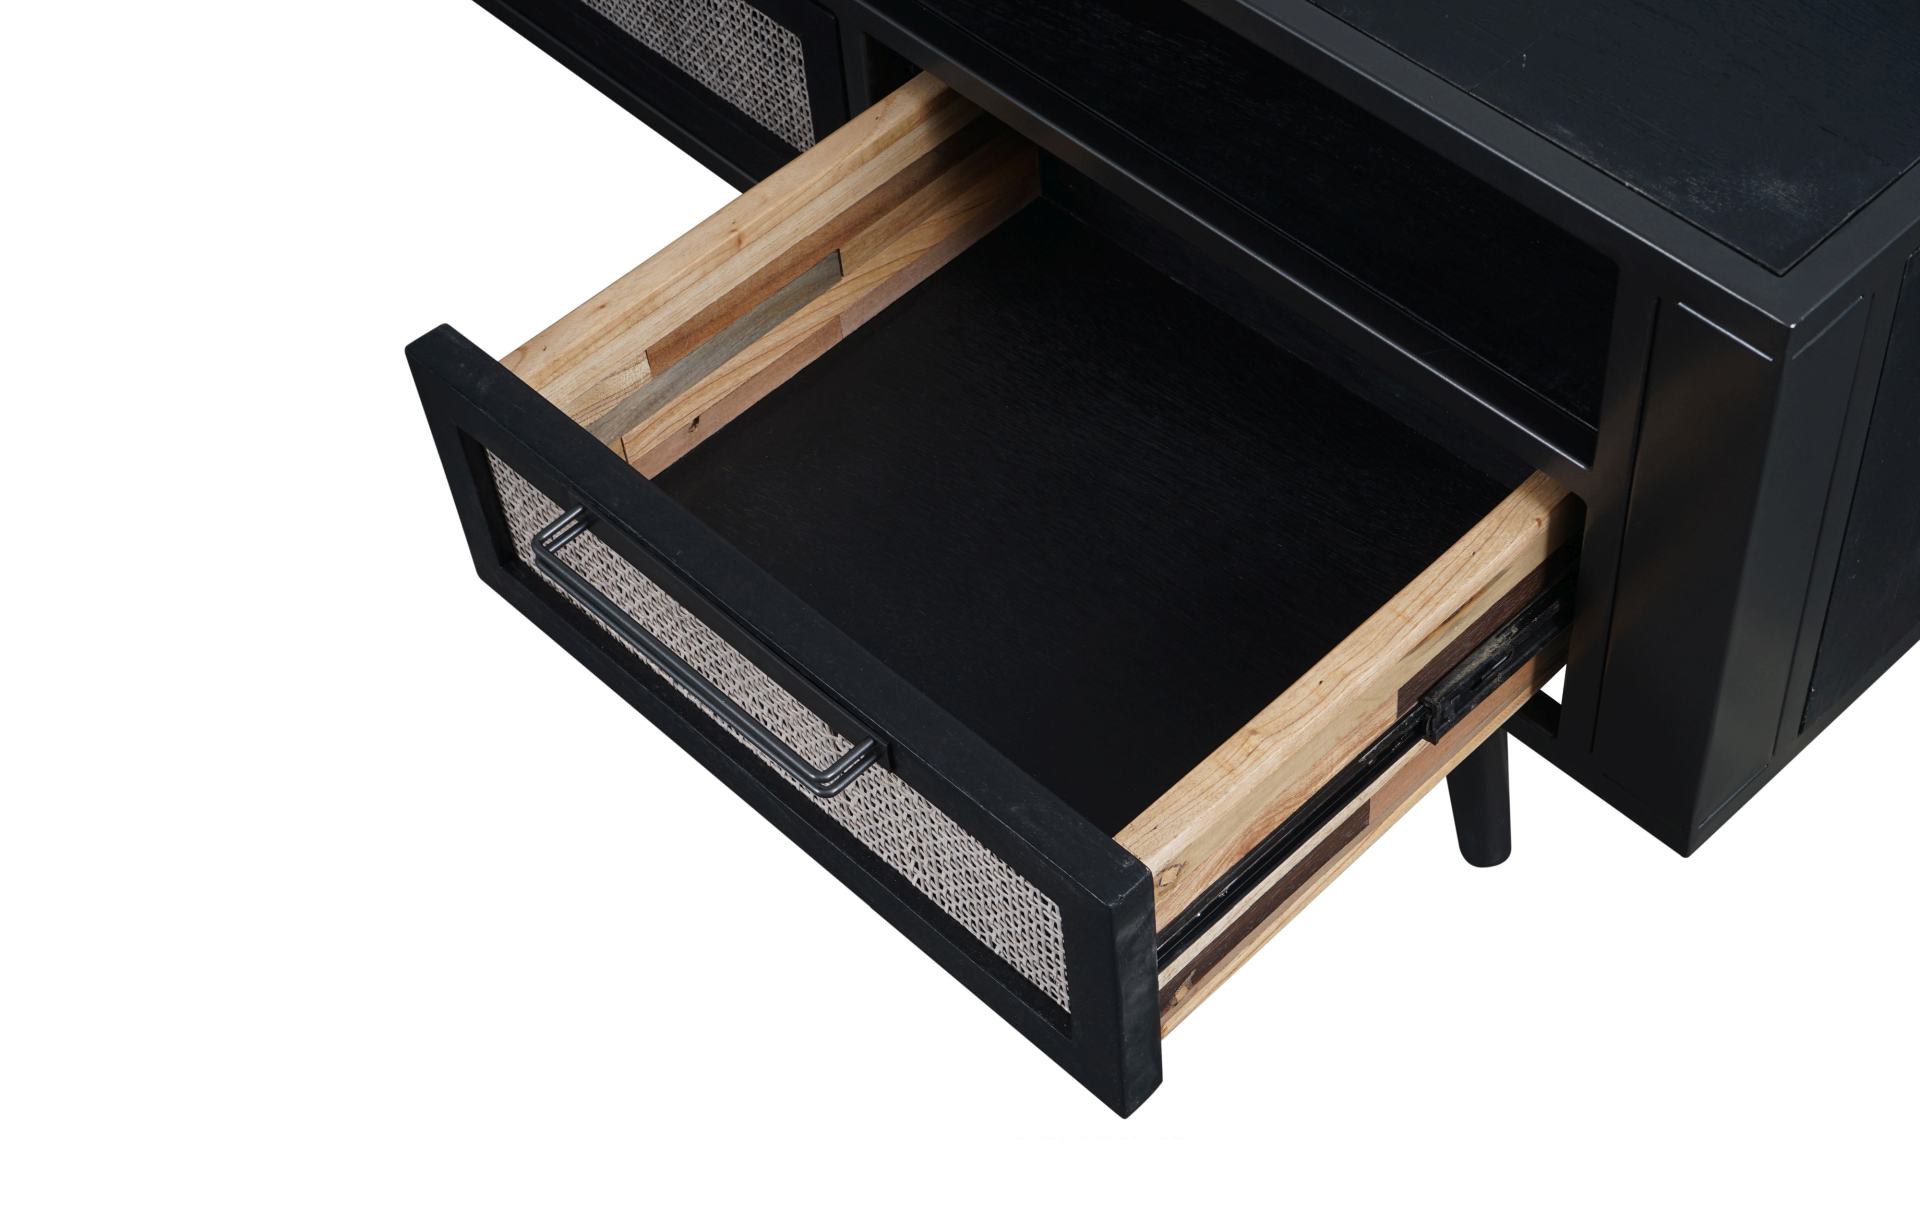 Das TV-Board Nordic Mindi Rattan überzeugt mit seinem Industriellen Design. Gefertigt wurde es aus Rattan und Mindi Holz, welches einen schwarzen Farbton besitzt. Das Gestell ist aus Metall und hat eine schwarze Farbe. Das TV-Board verfügt über drei Schub